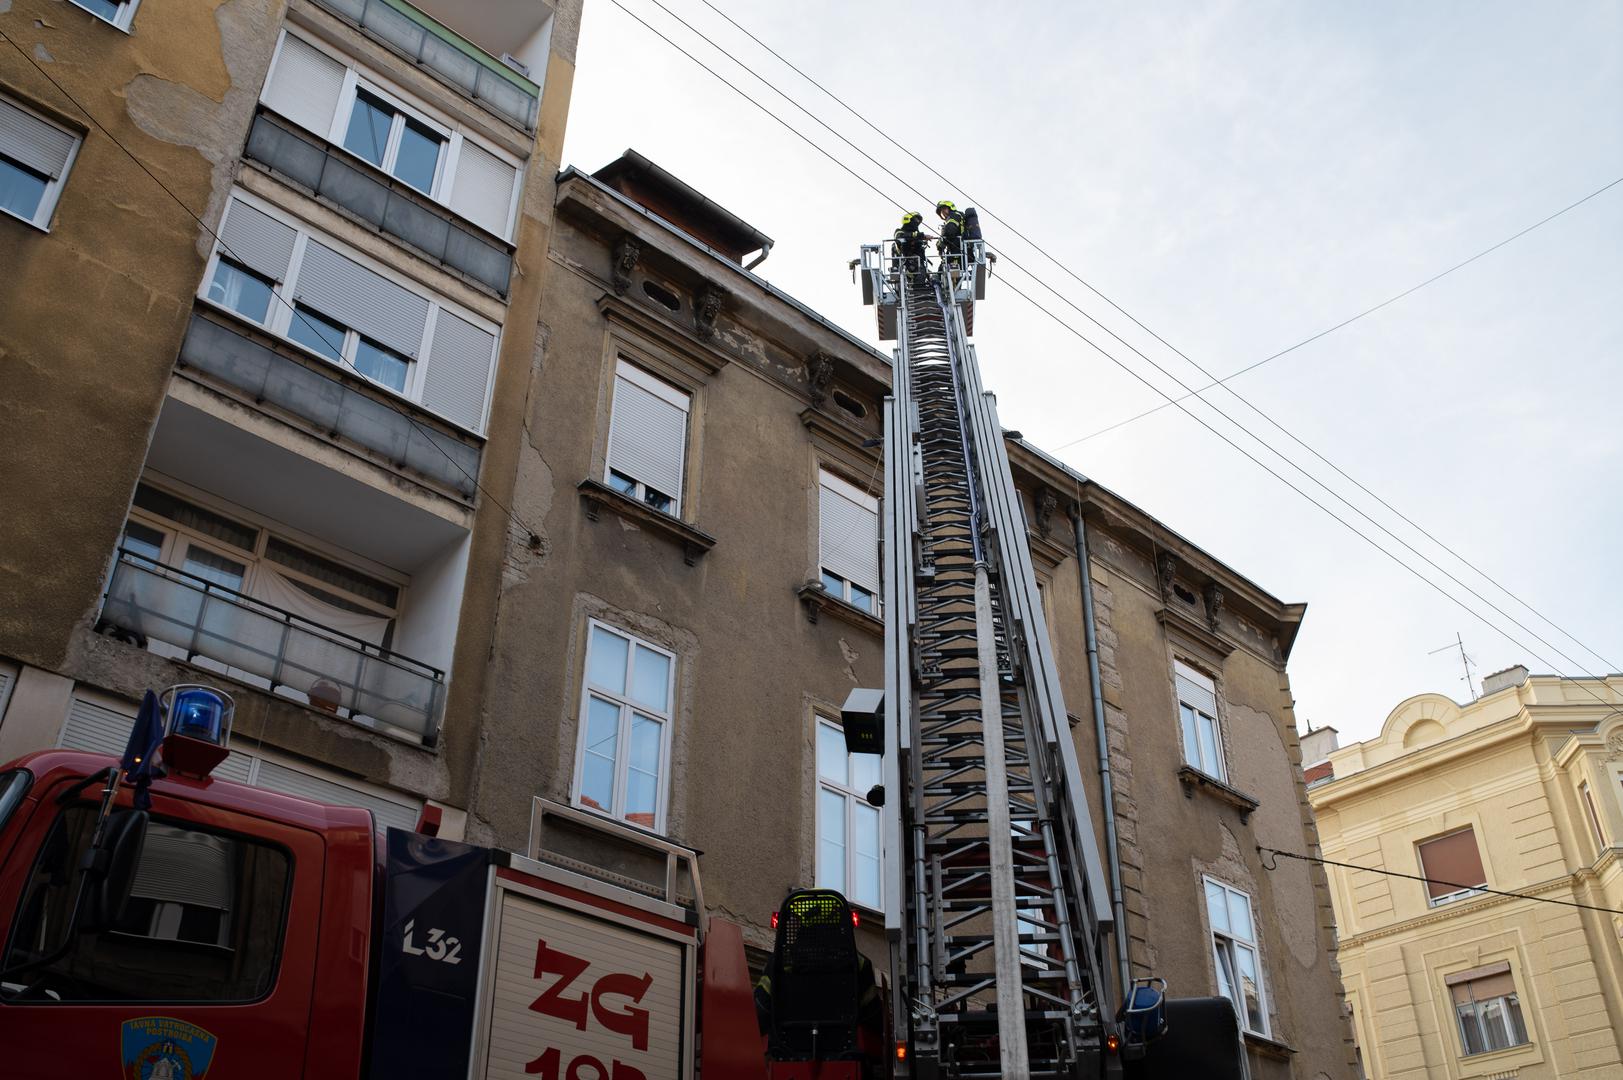 Nešto prije 18 sati zagrebački vatrogasci dobili su niz dojava građana da gori stan.